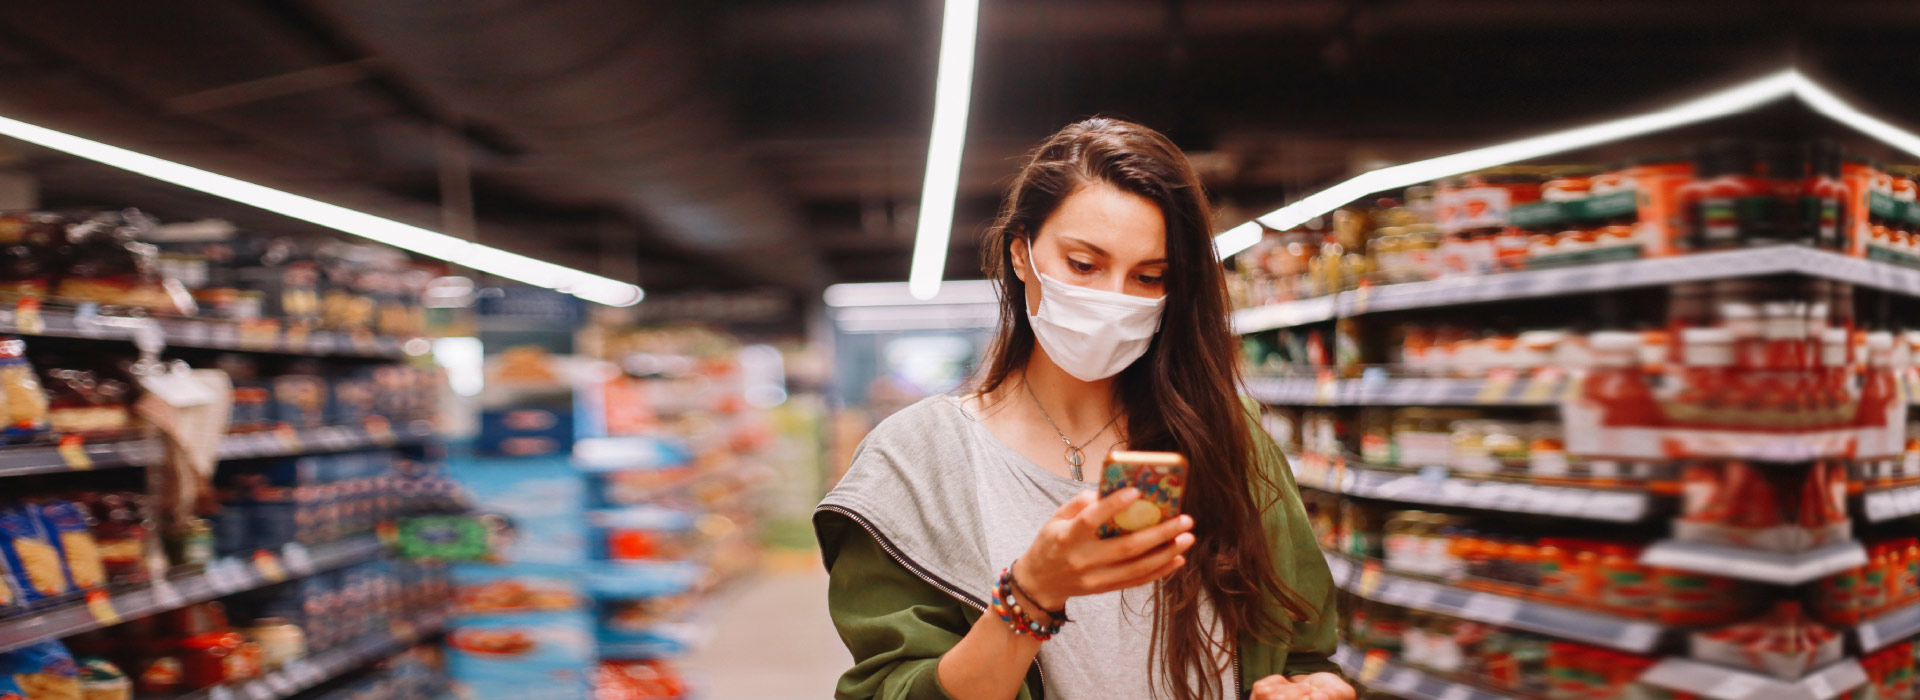 Mujer con cubrebocas comprando en supermercado con su celular en mano